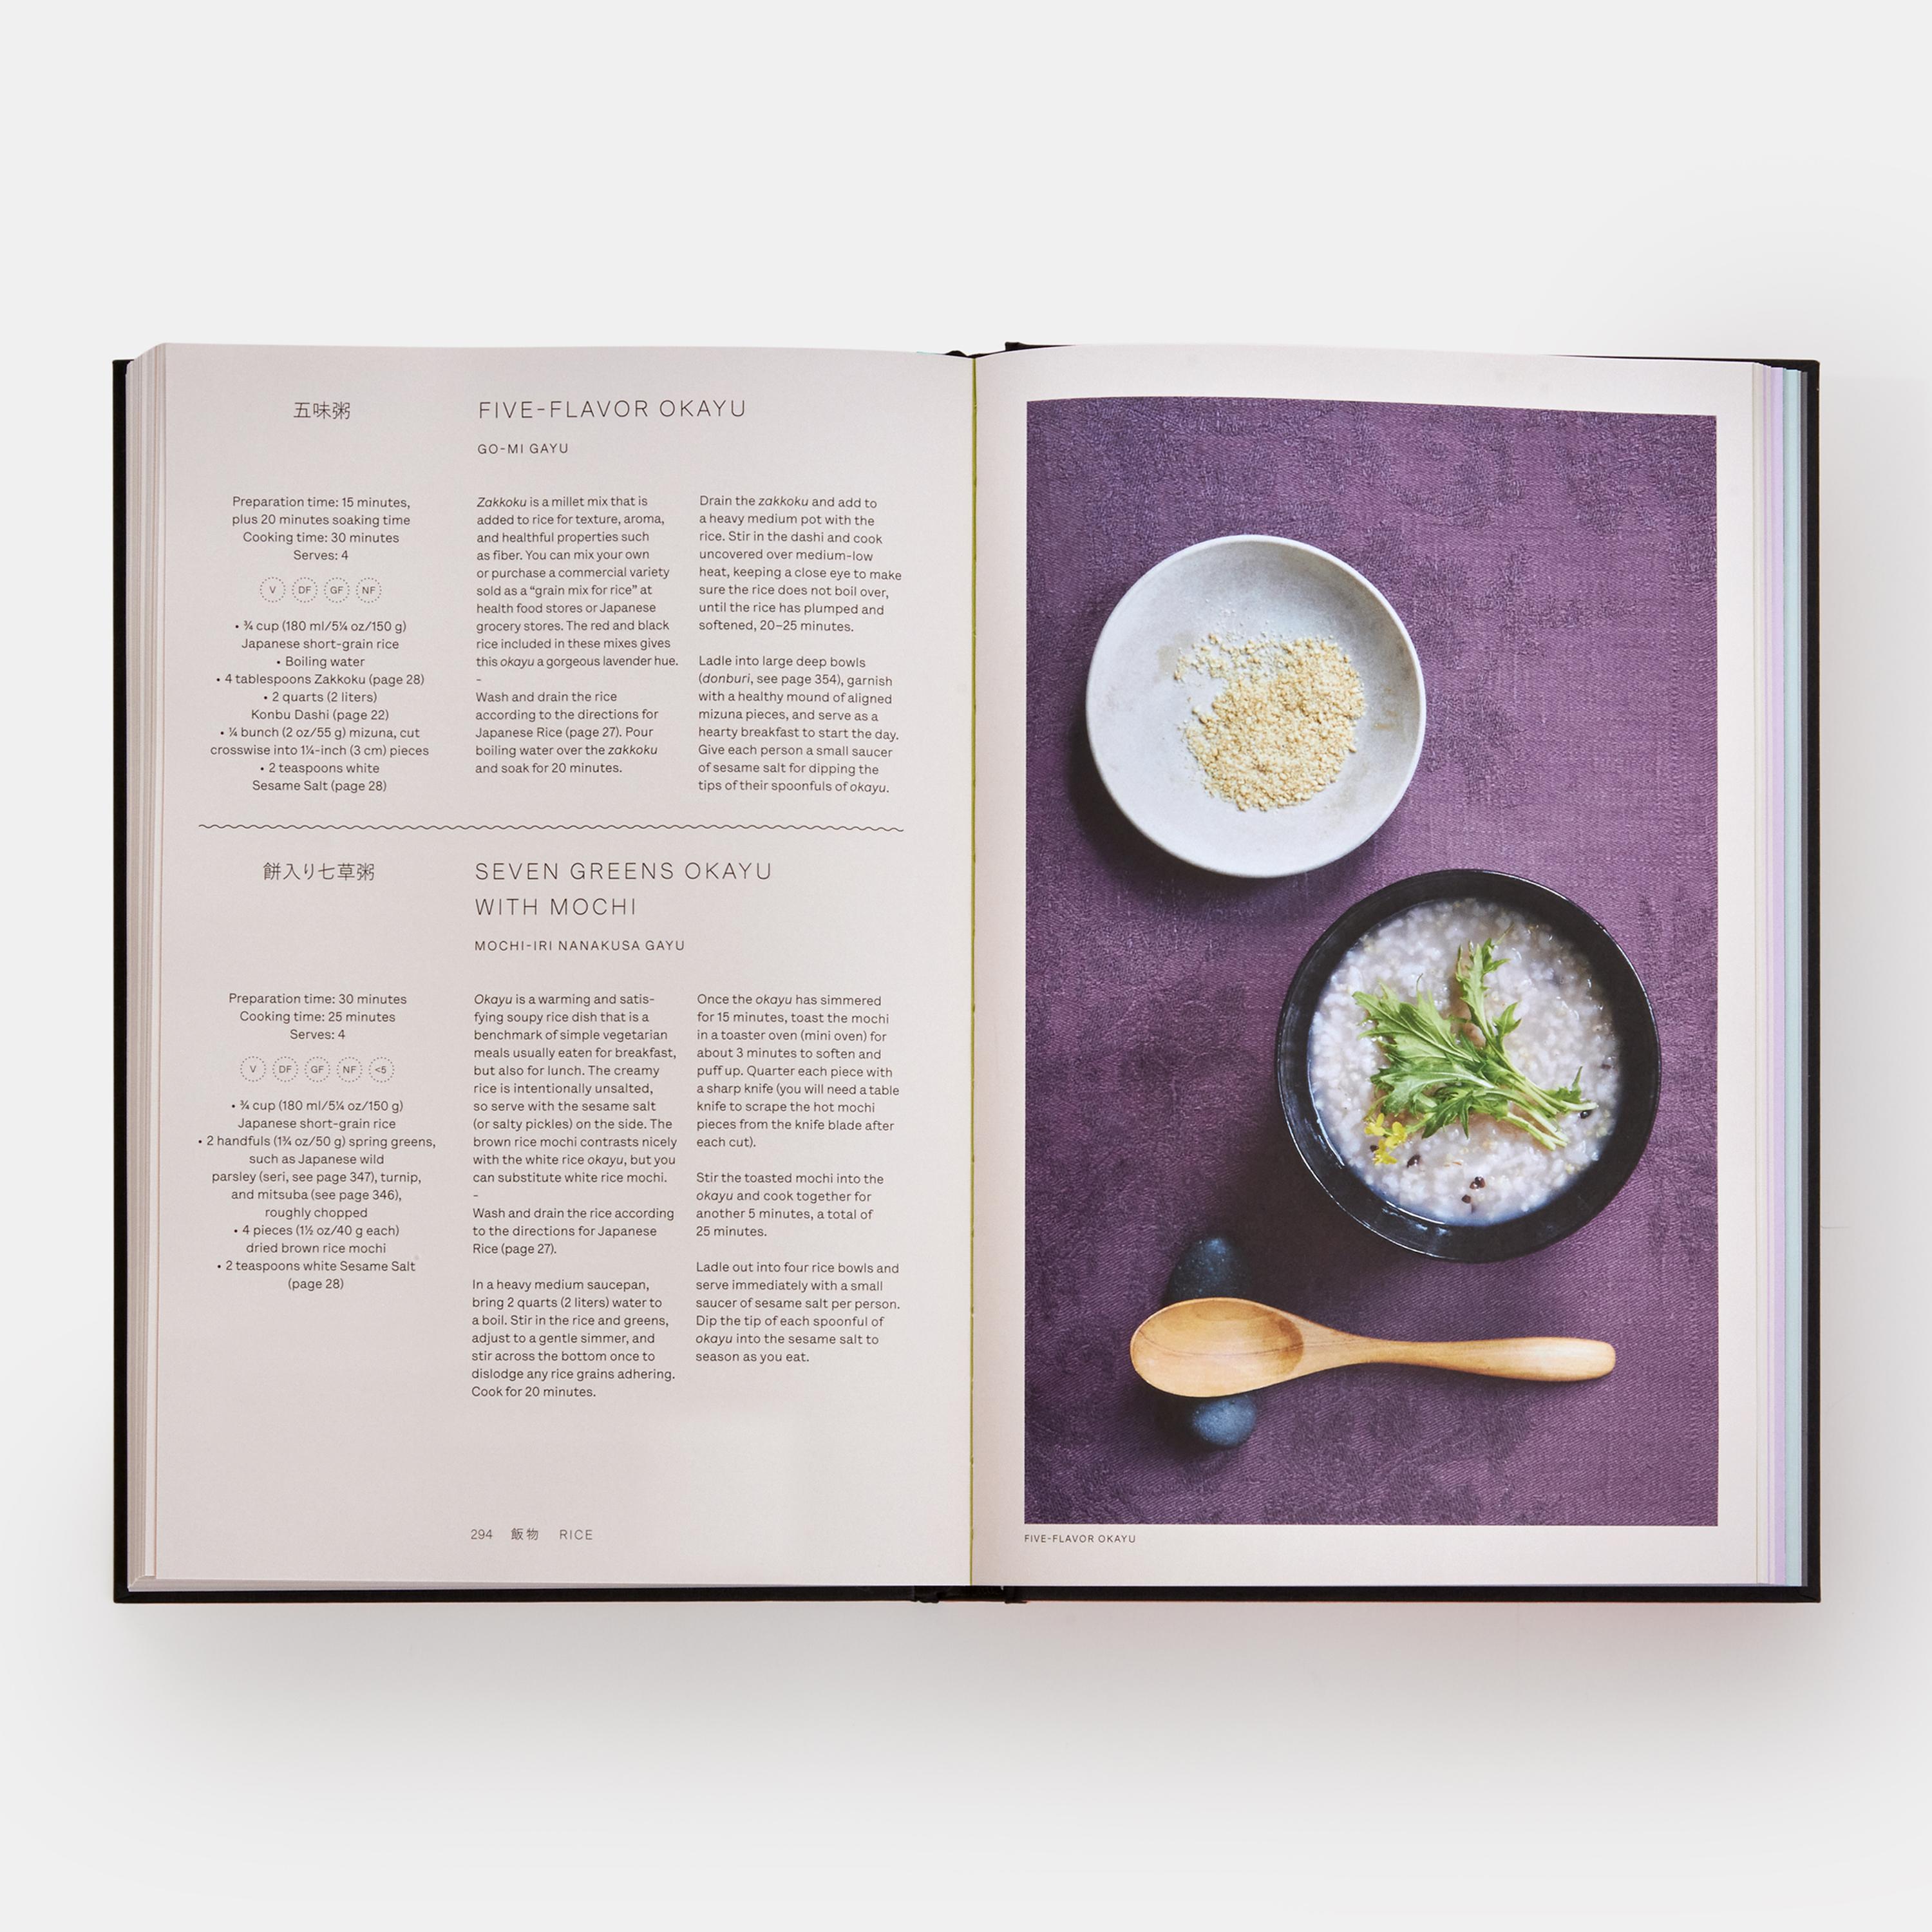 Extraordinaire ... un livre indispensable pour tous ceux qui aiment les légumes' - Amanda Cohen, chef nommée par James Beard et propriétaire de Dirt Candy

Par l'auteur du best-seller mondial Japan : The Cookbook, plus de 250 recettes japonaises